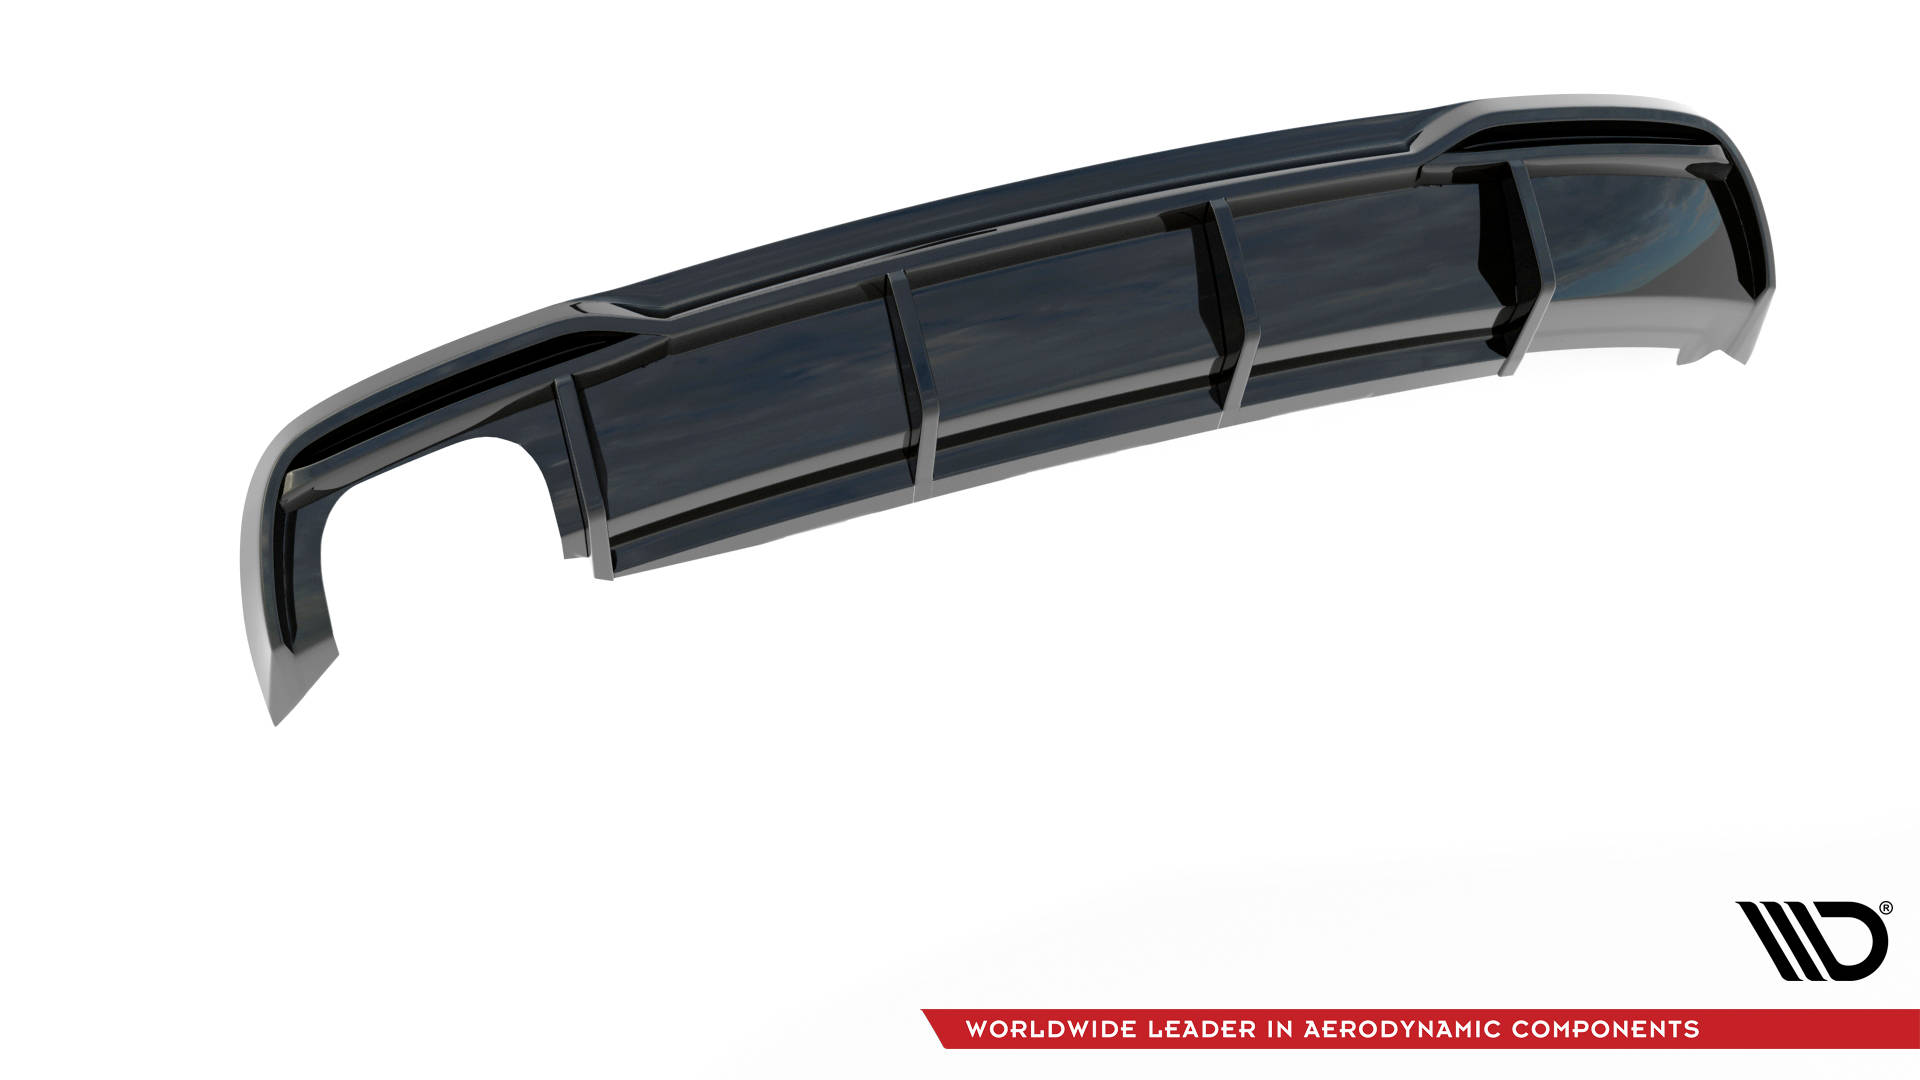 Maxton Design Diffusor Heck Ansatz für Audi A5 Coupe 8T Facelift schwarz Hochglanz